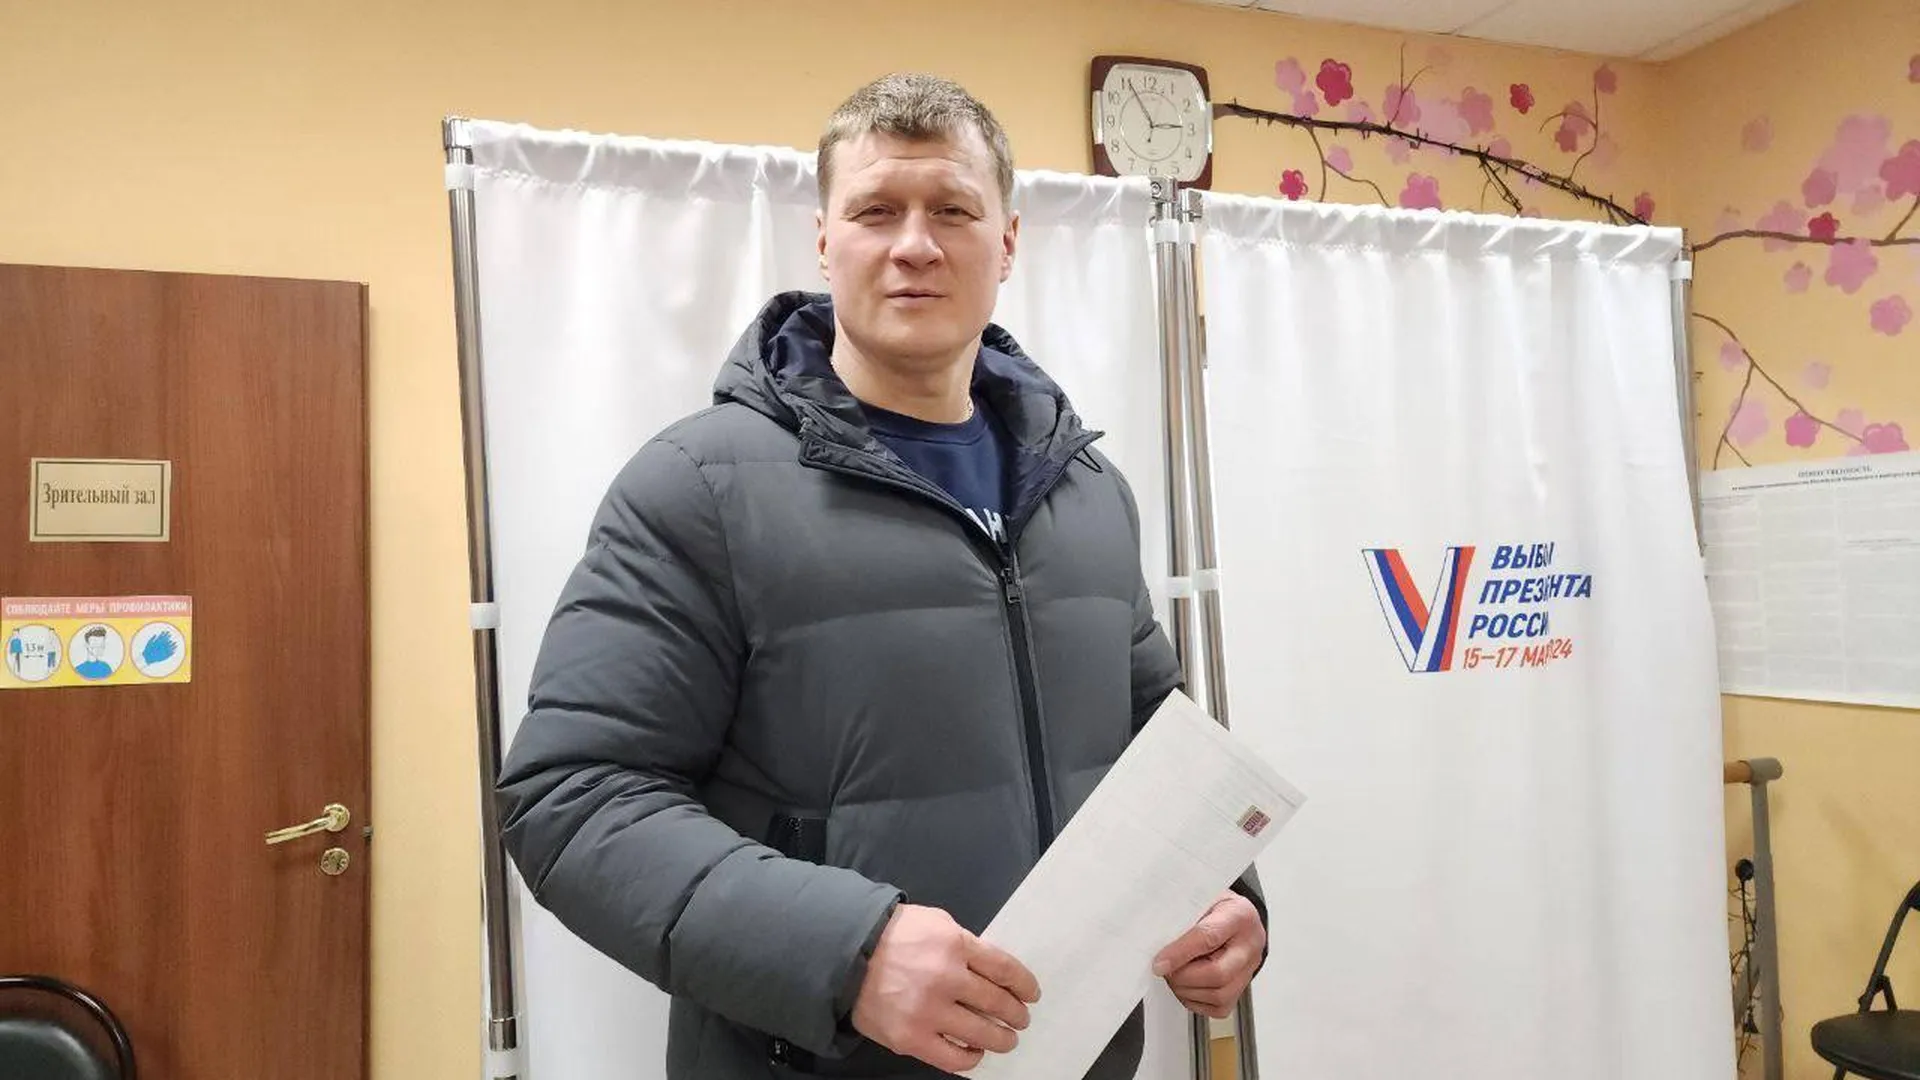 Боксер Александр Поветкин проголосовал на выборах президента РФ в Подмосковье